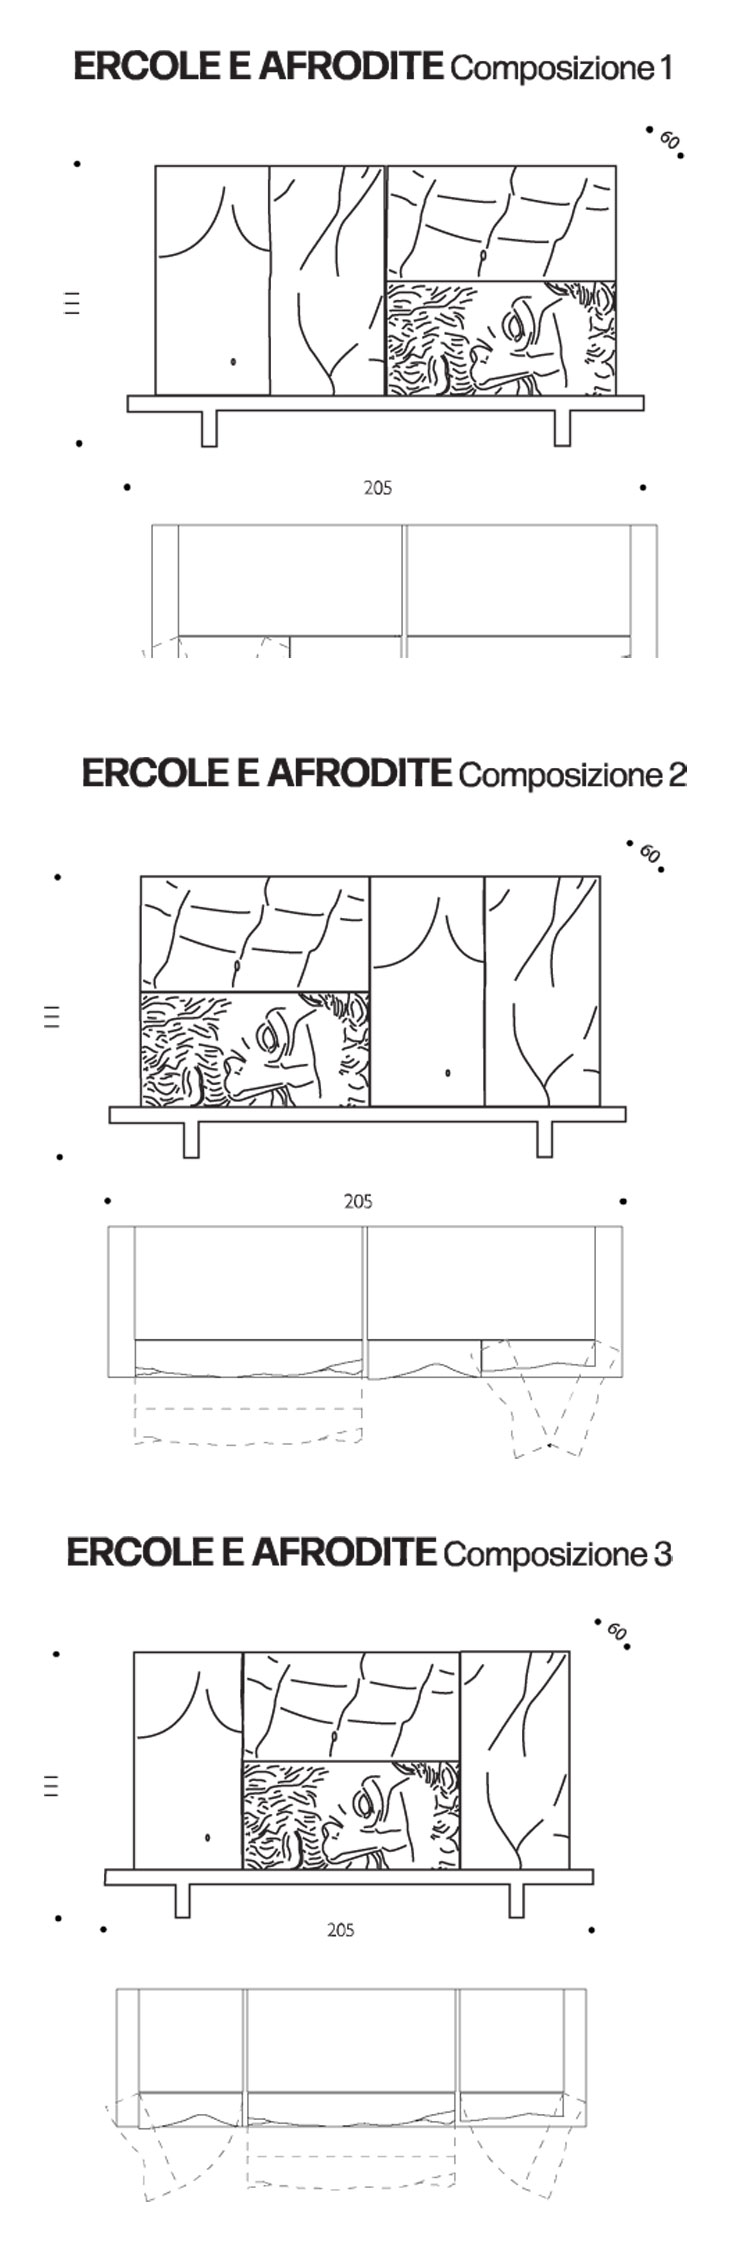 Container Ercole e Afrodite Driade dimensions